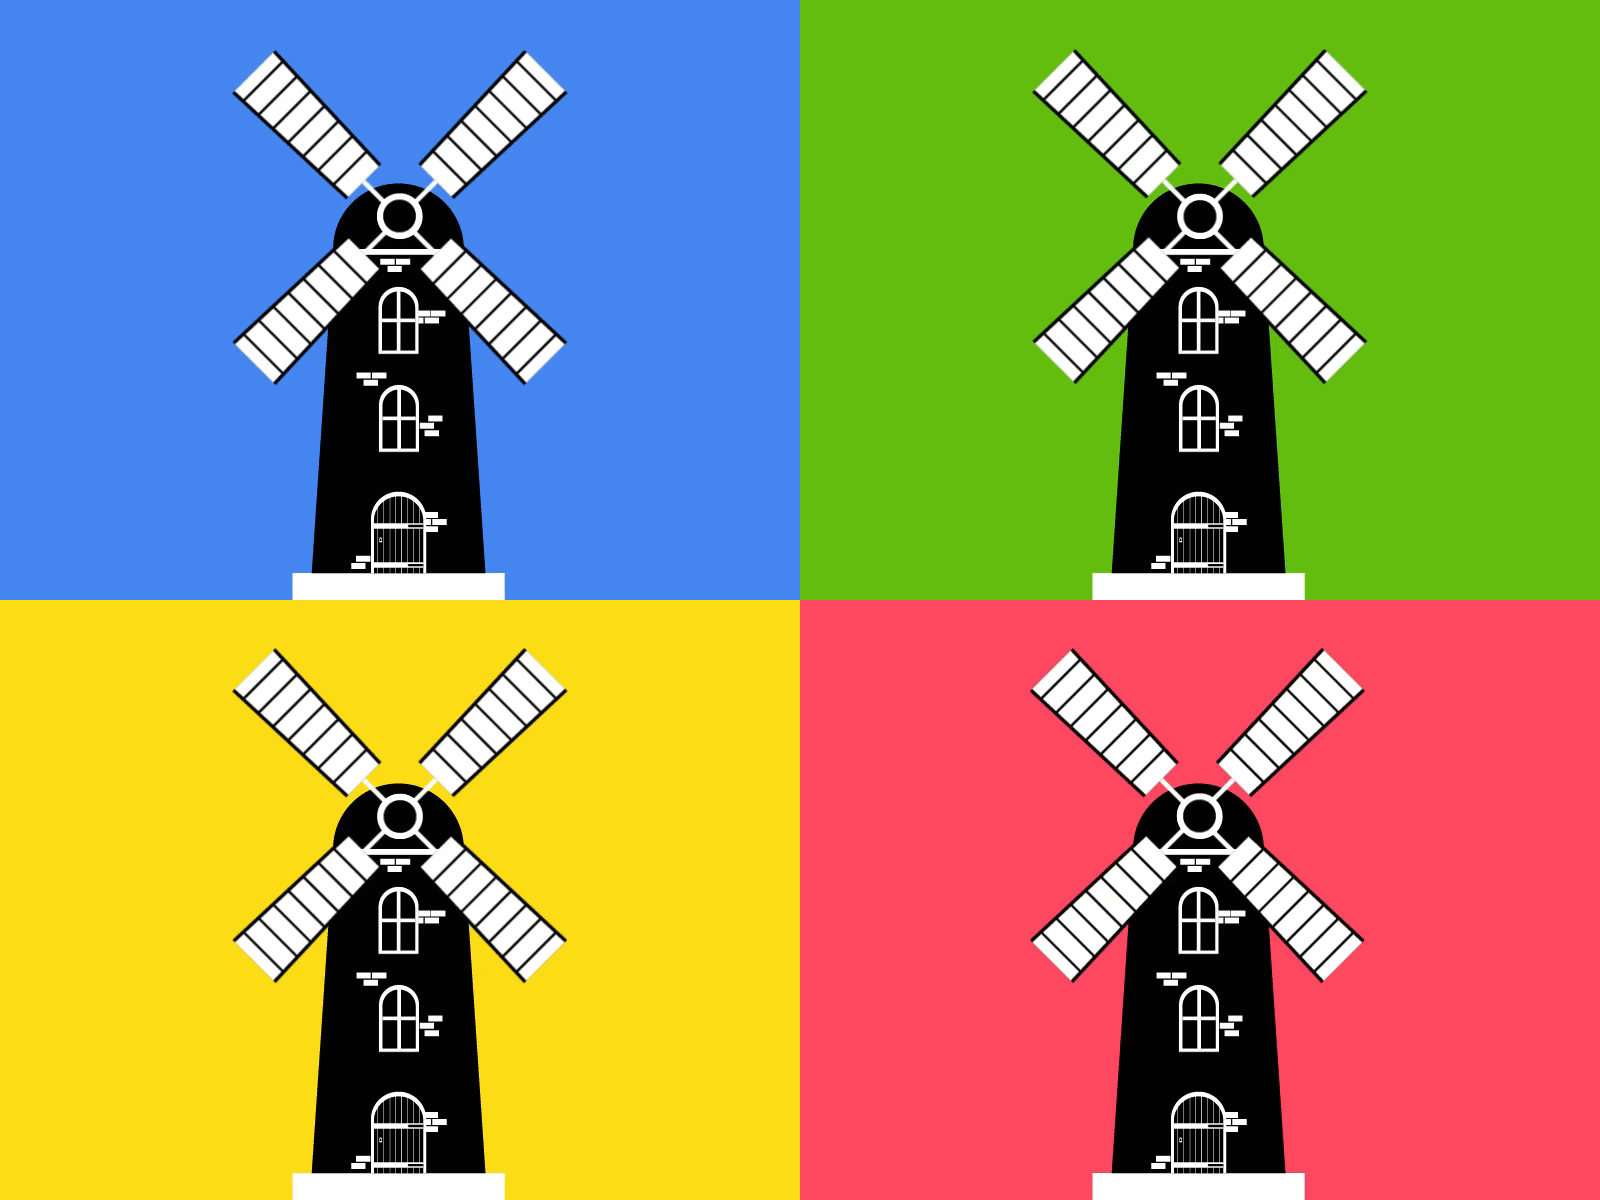 Molino silueta /Windmill silohuette